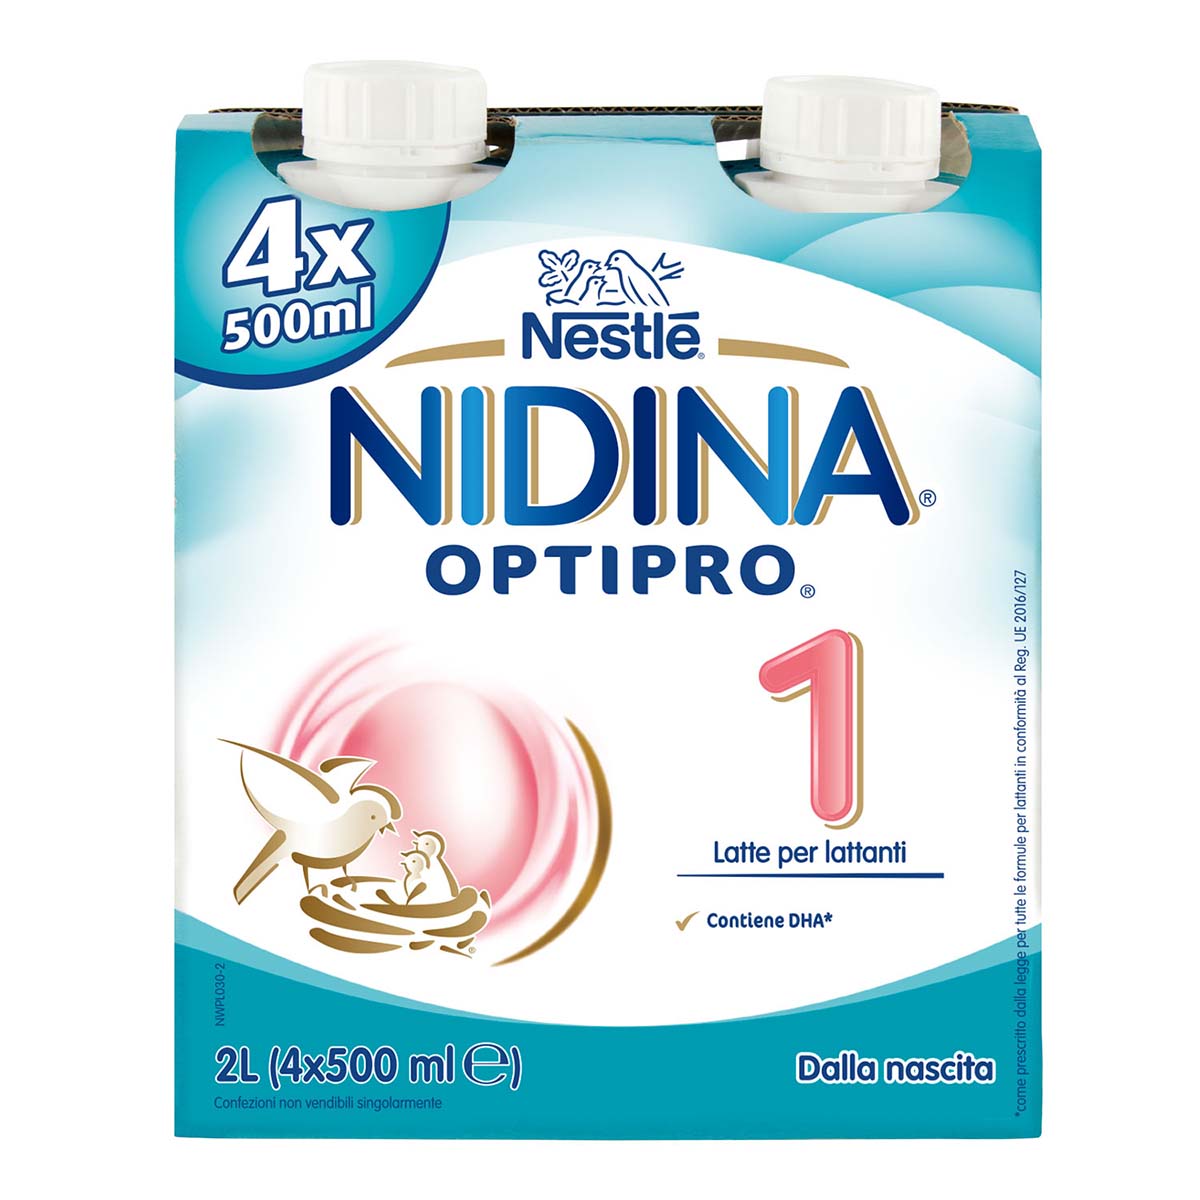 Nestlé NIDINA OPTIPRO 1 4x500 ml, Latte per lattanti liquido, dalla nascita al 6° mese